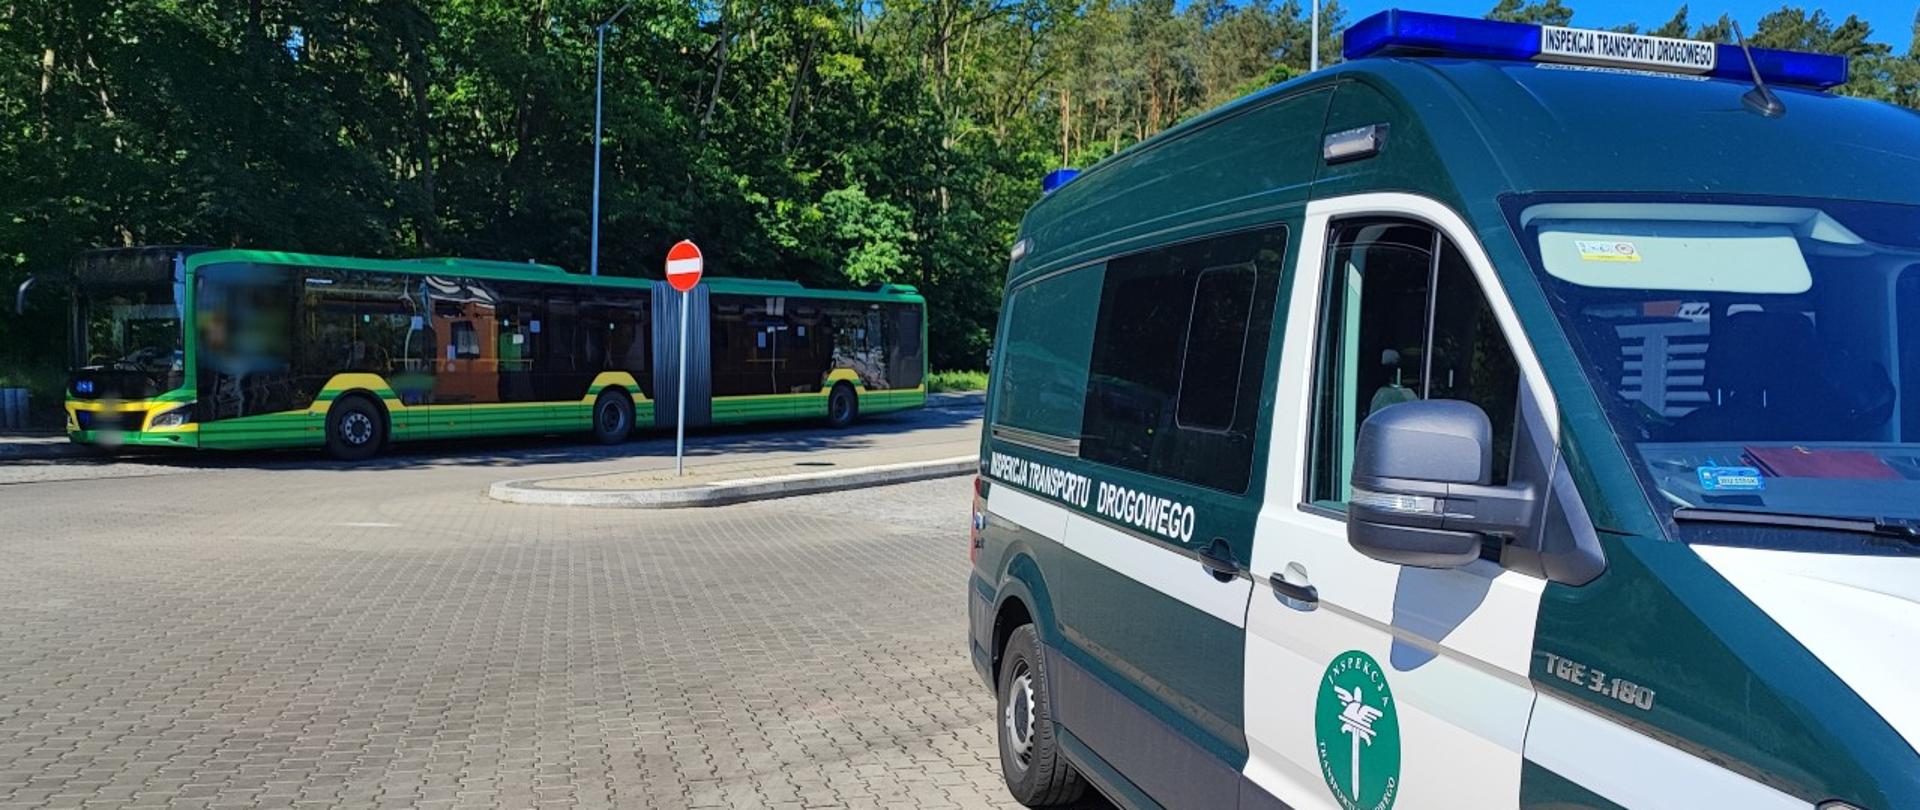 Po prawej stronie oznakowany radiowóz ITD typu furgon. W tle kontrolowany autobus przegubowy komunikacji miejskiej w Szczecinie.